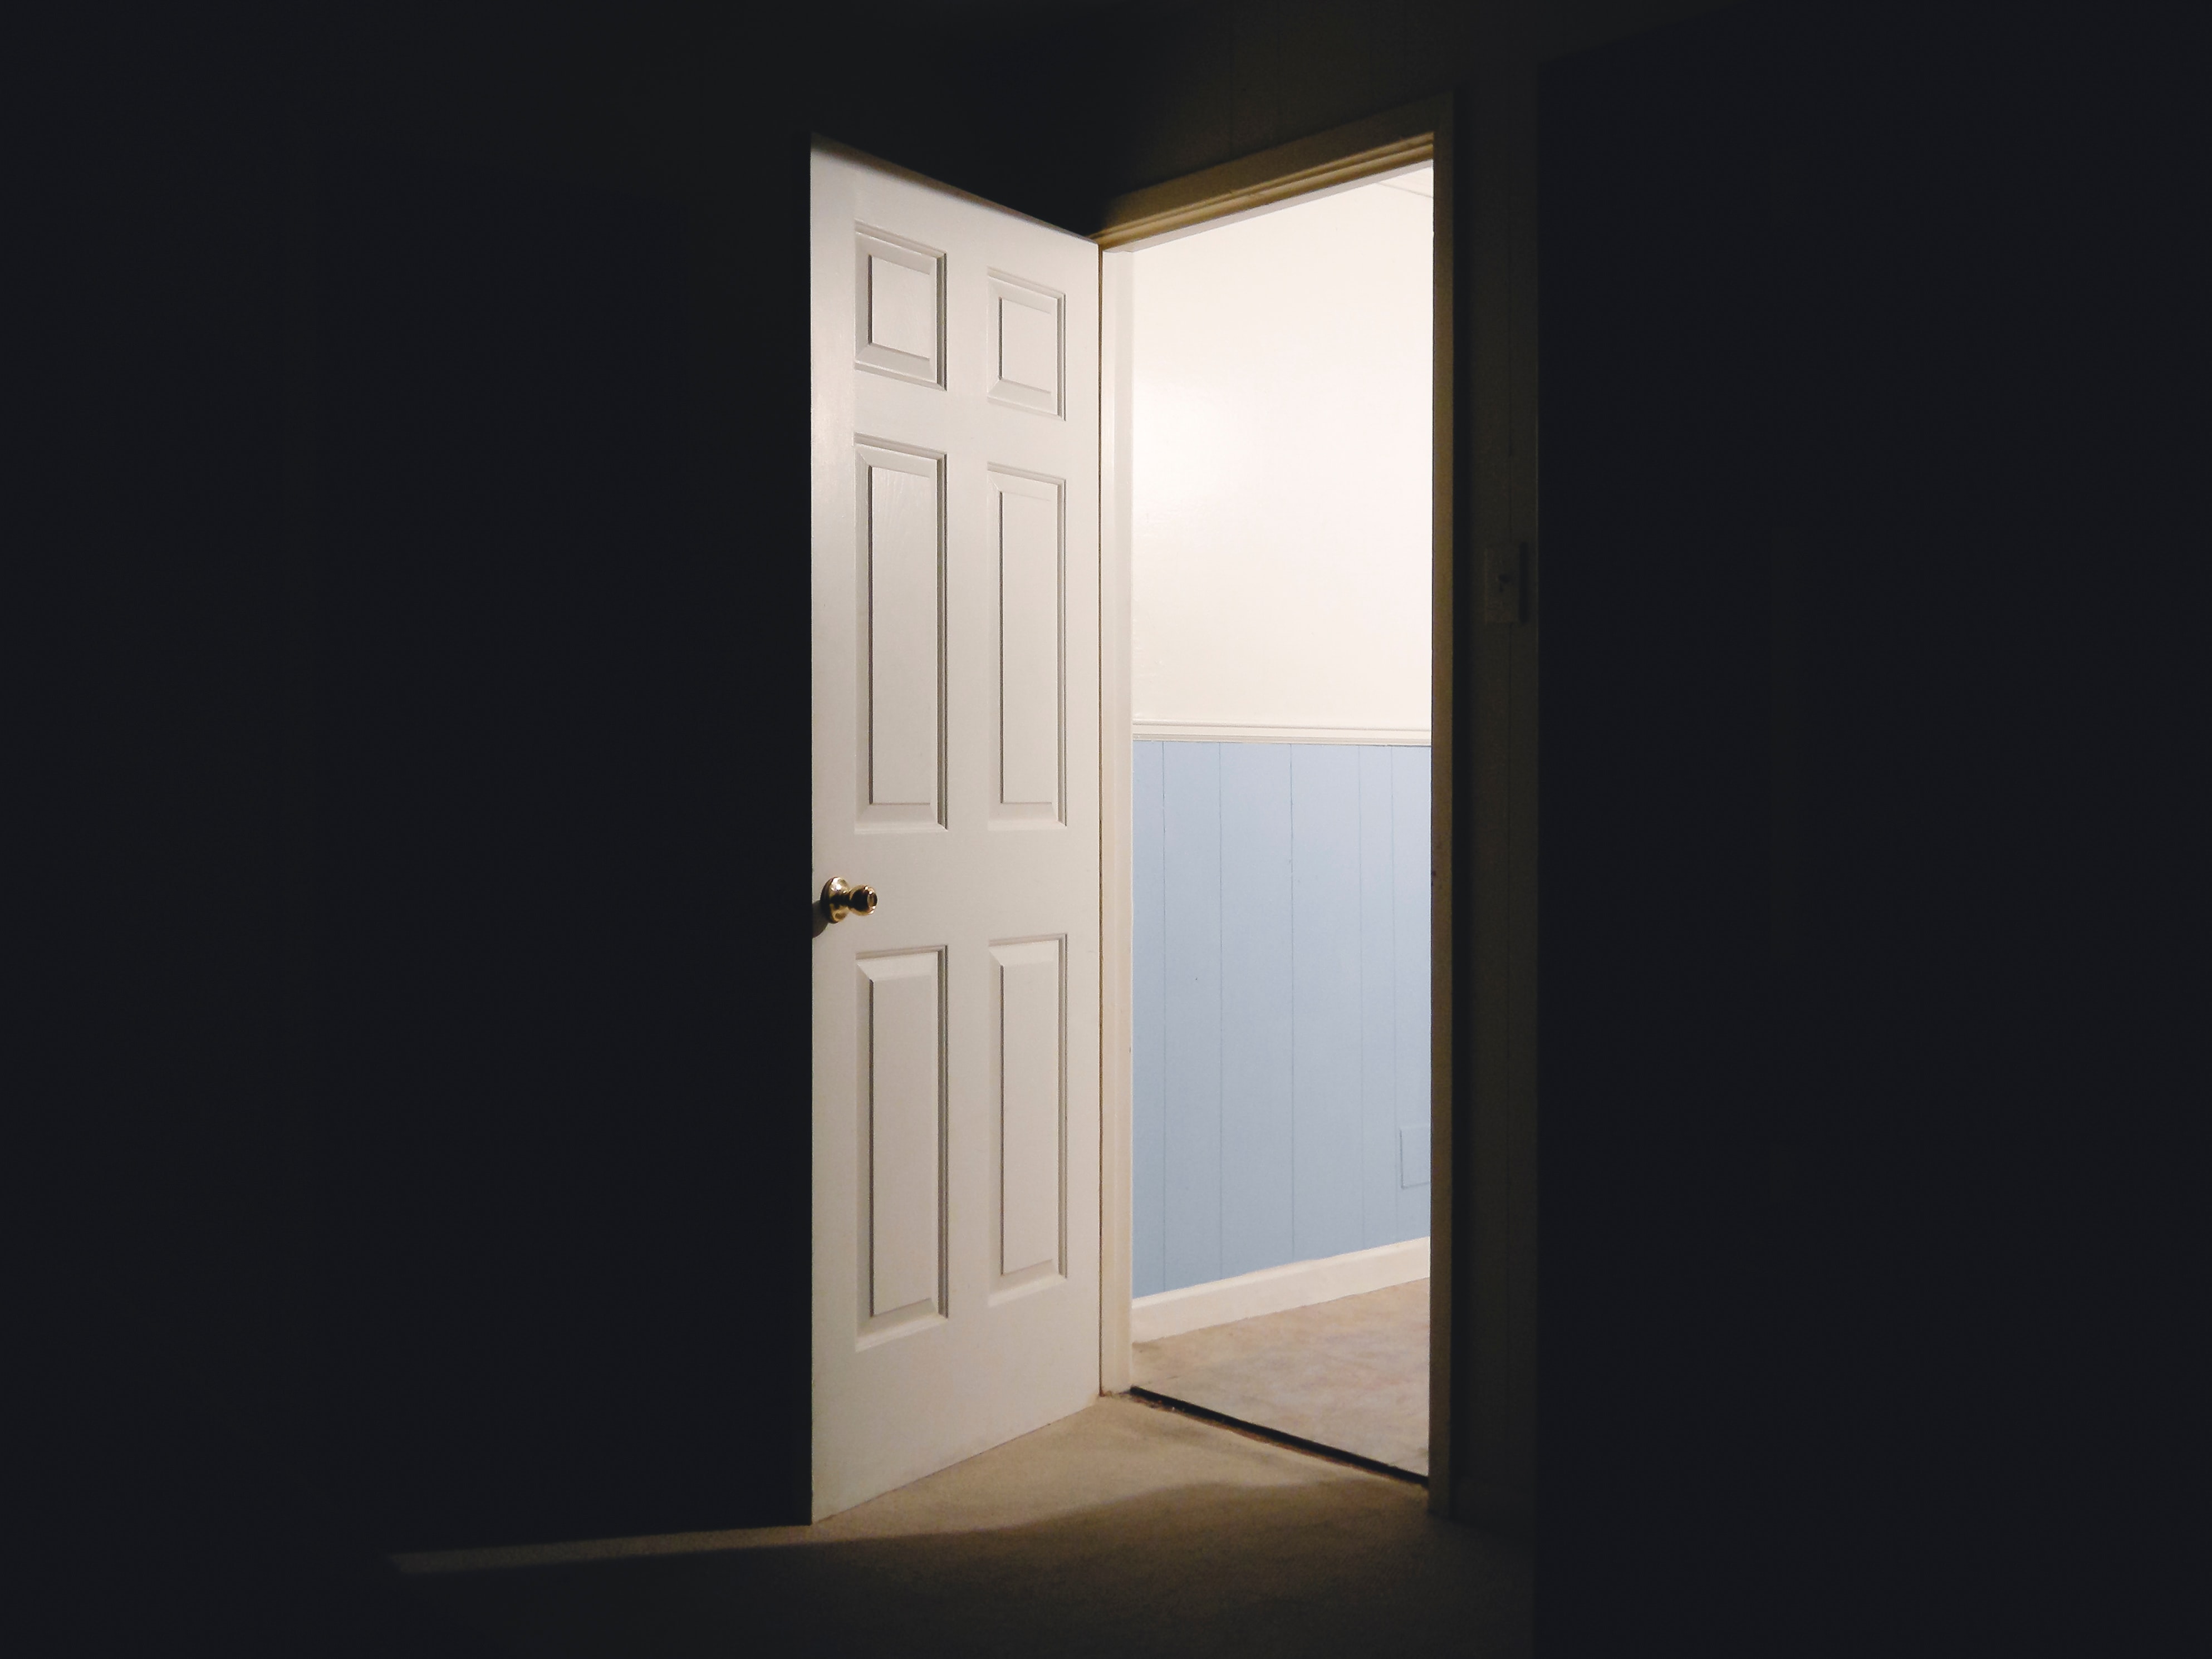 Open door into bright room